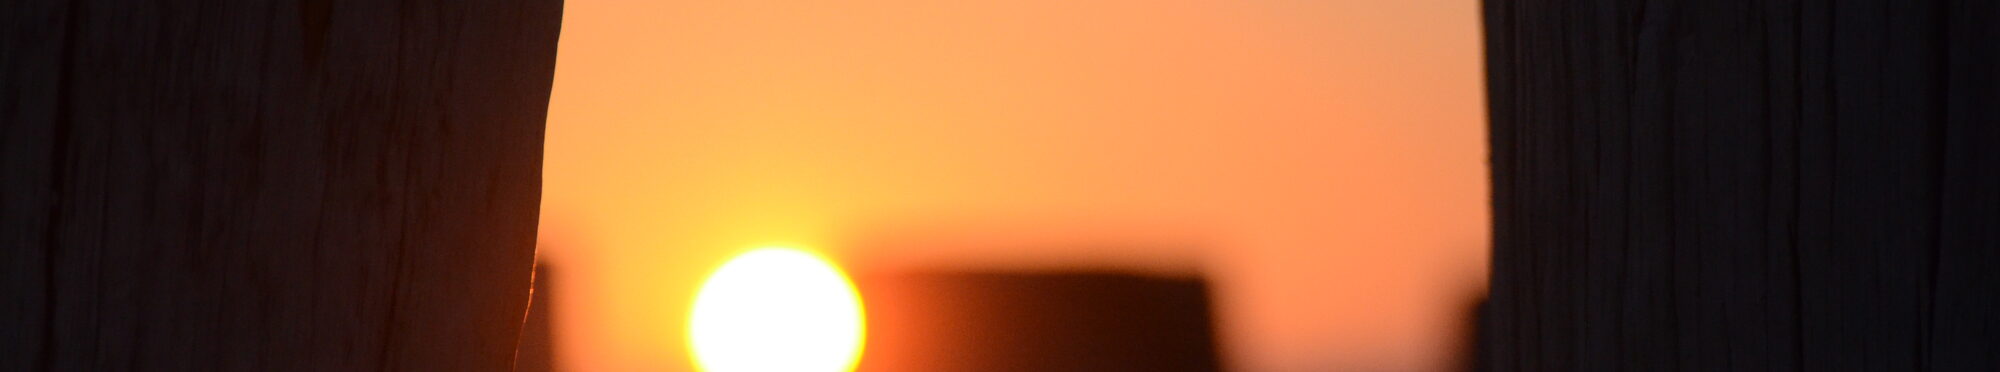 Bild zeigt Sonnenuntergang